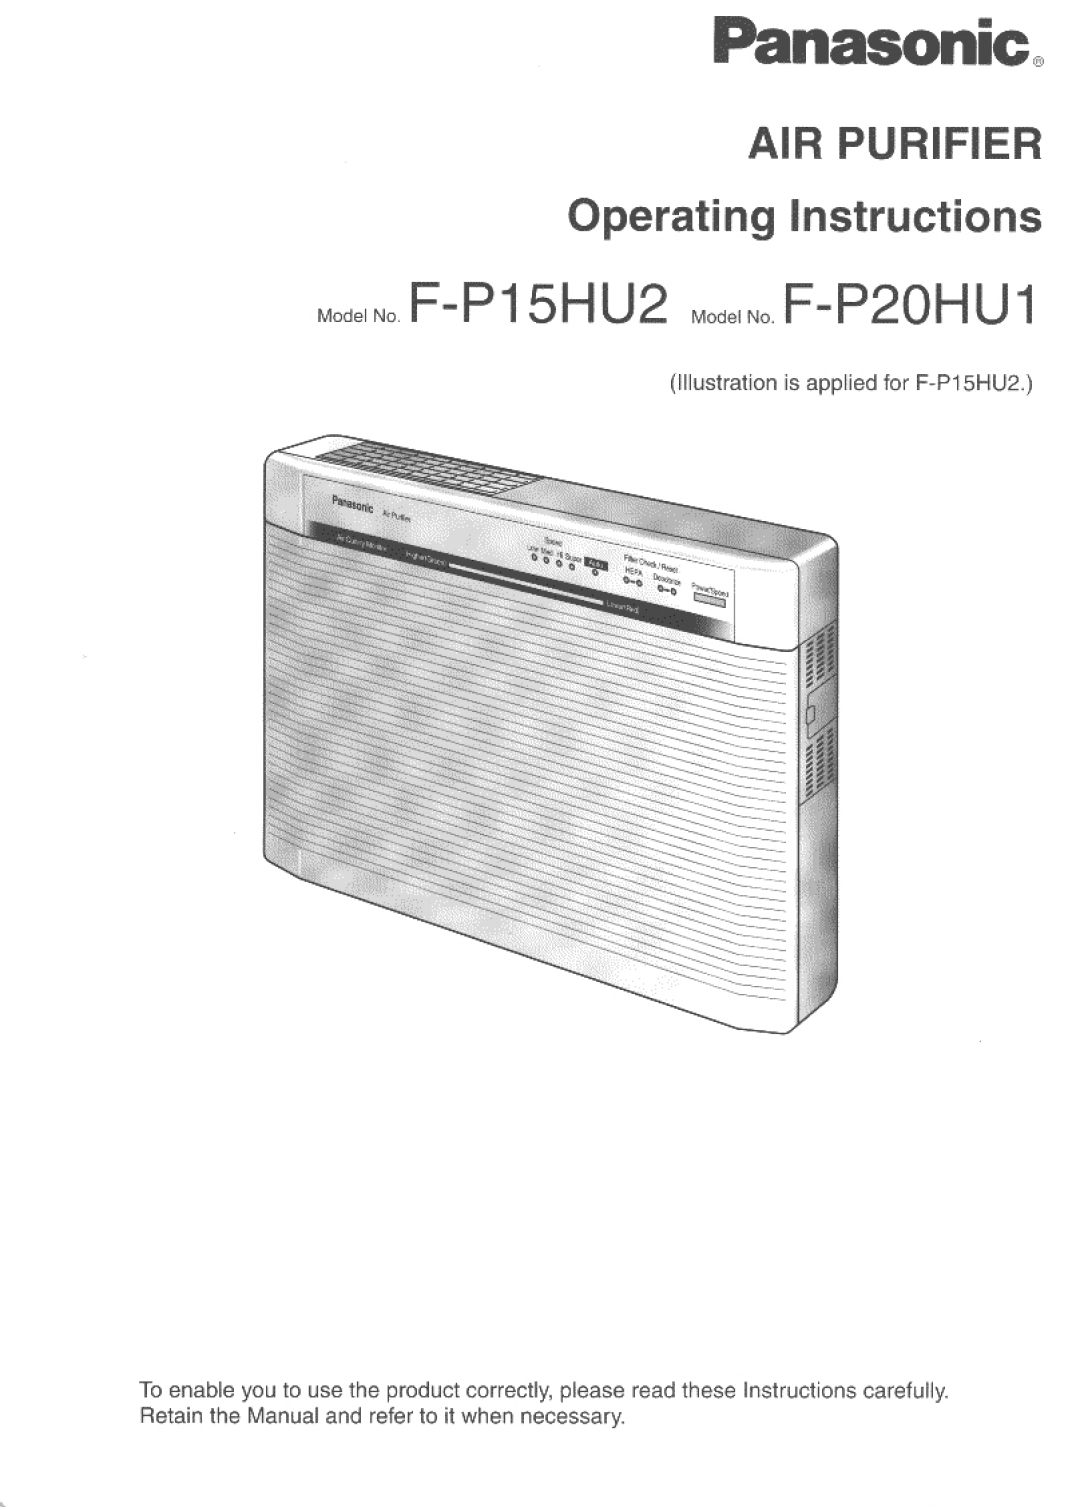 Panasonic F-P20HU1, F-P15HU2 manual 